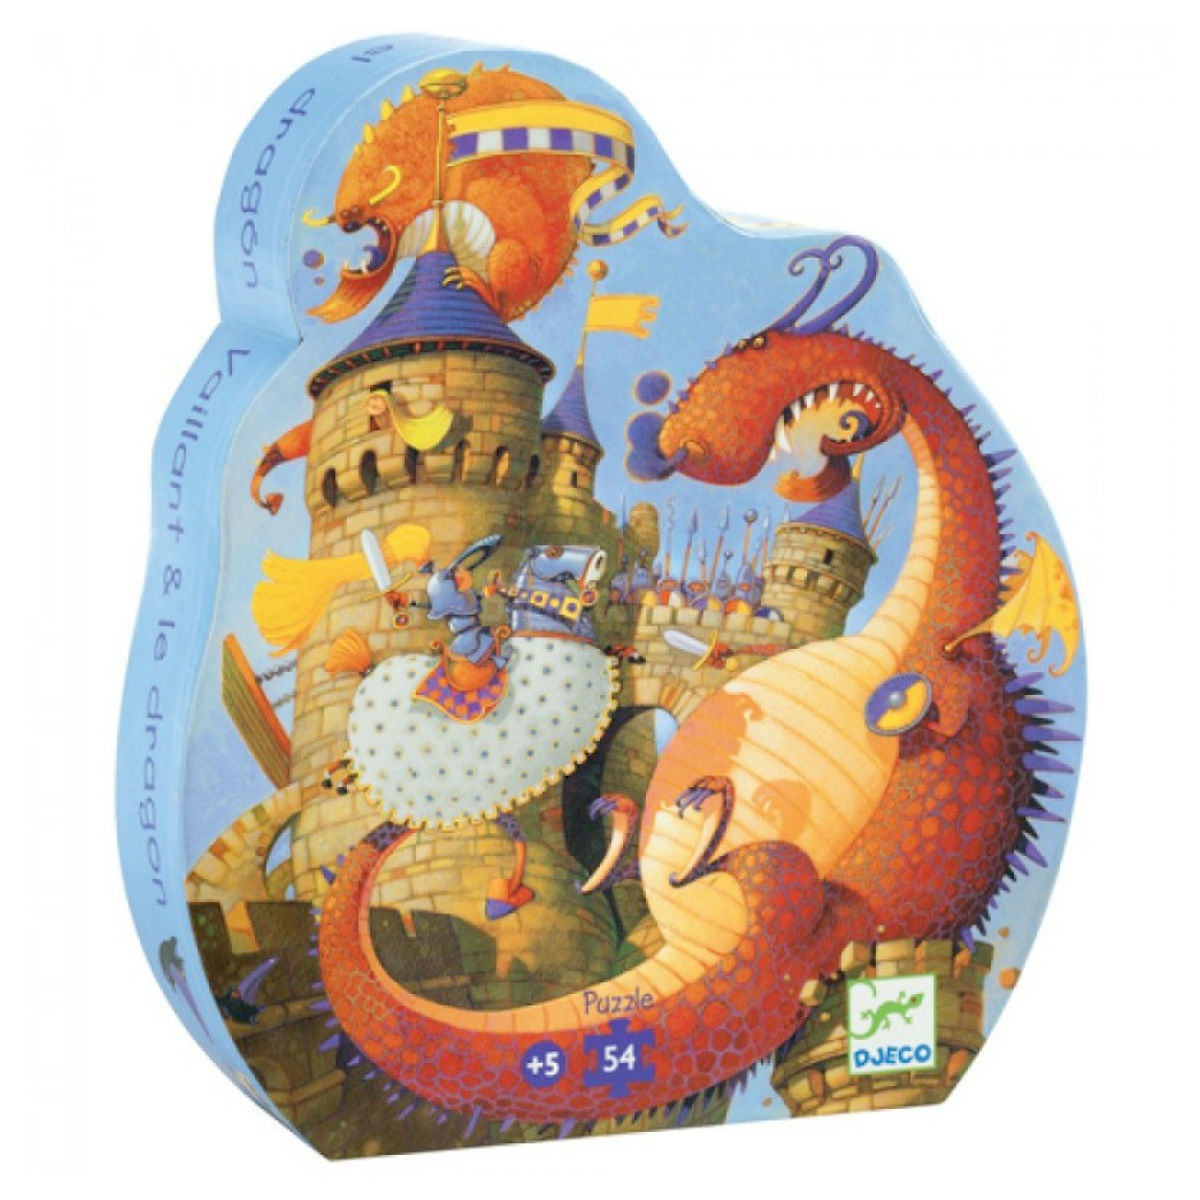 Vaillant e il Drago - Puzzle 54 pezzi - Djeco